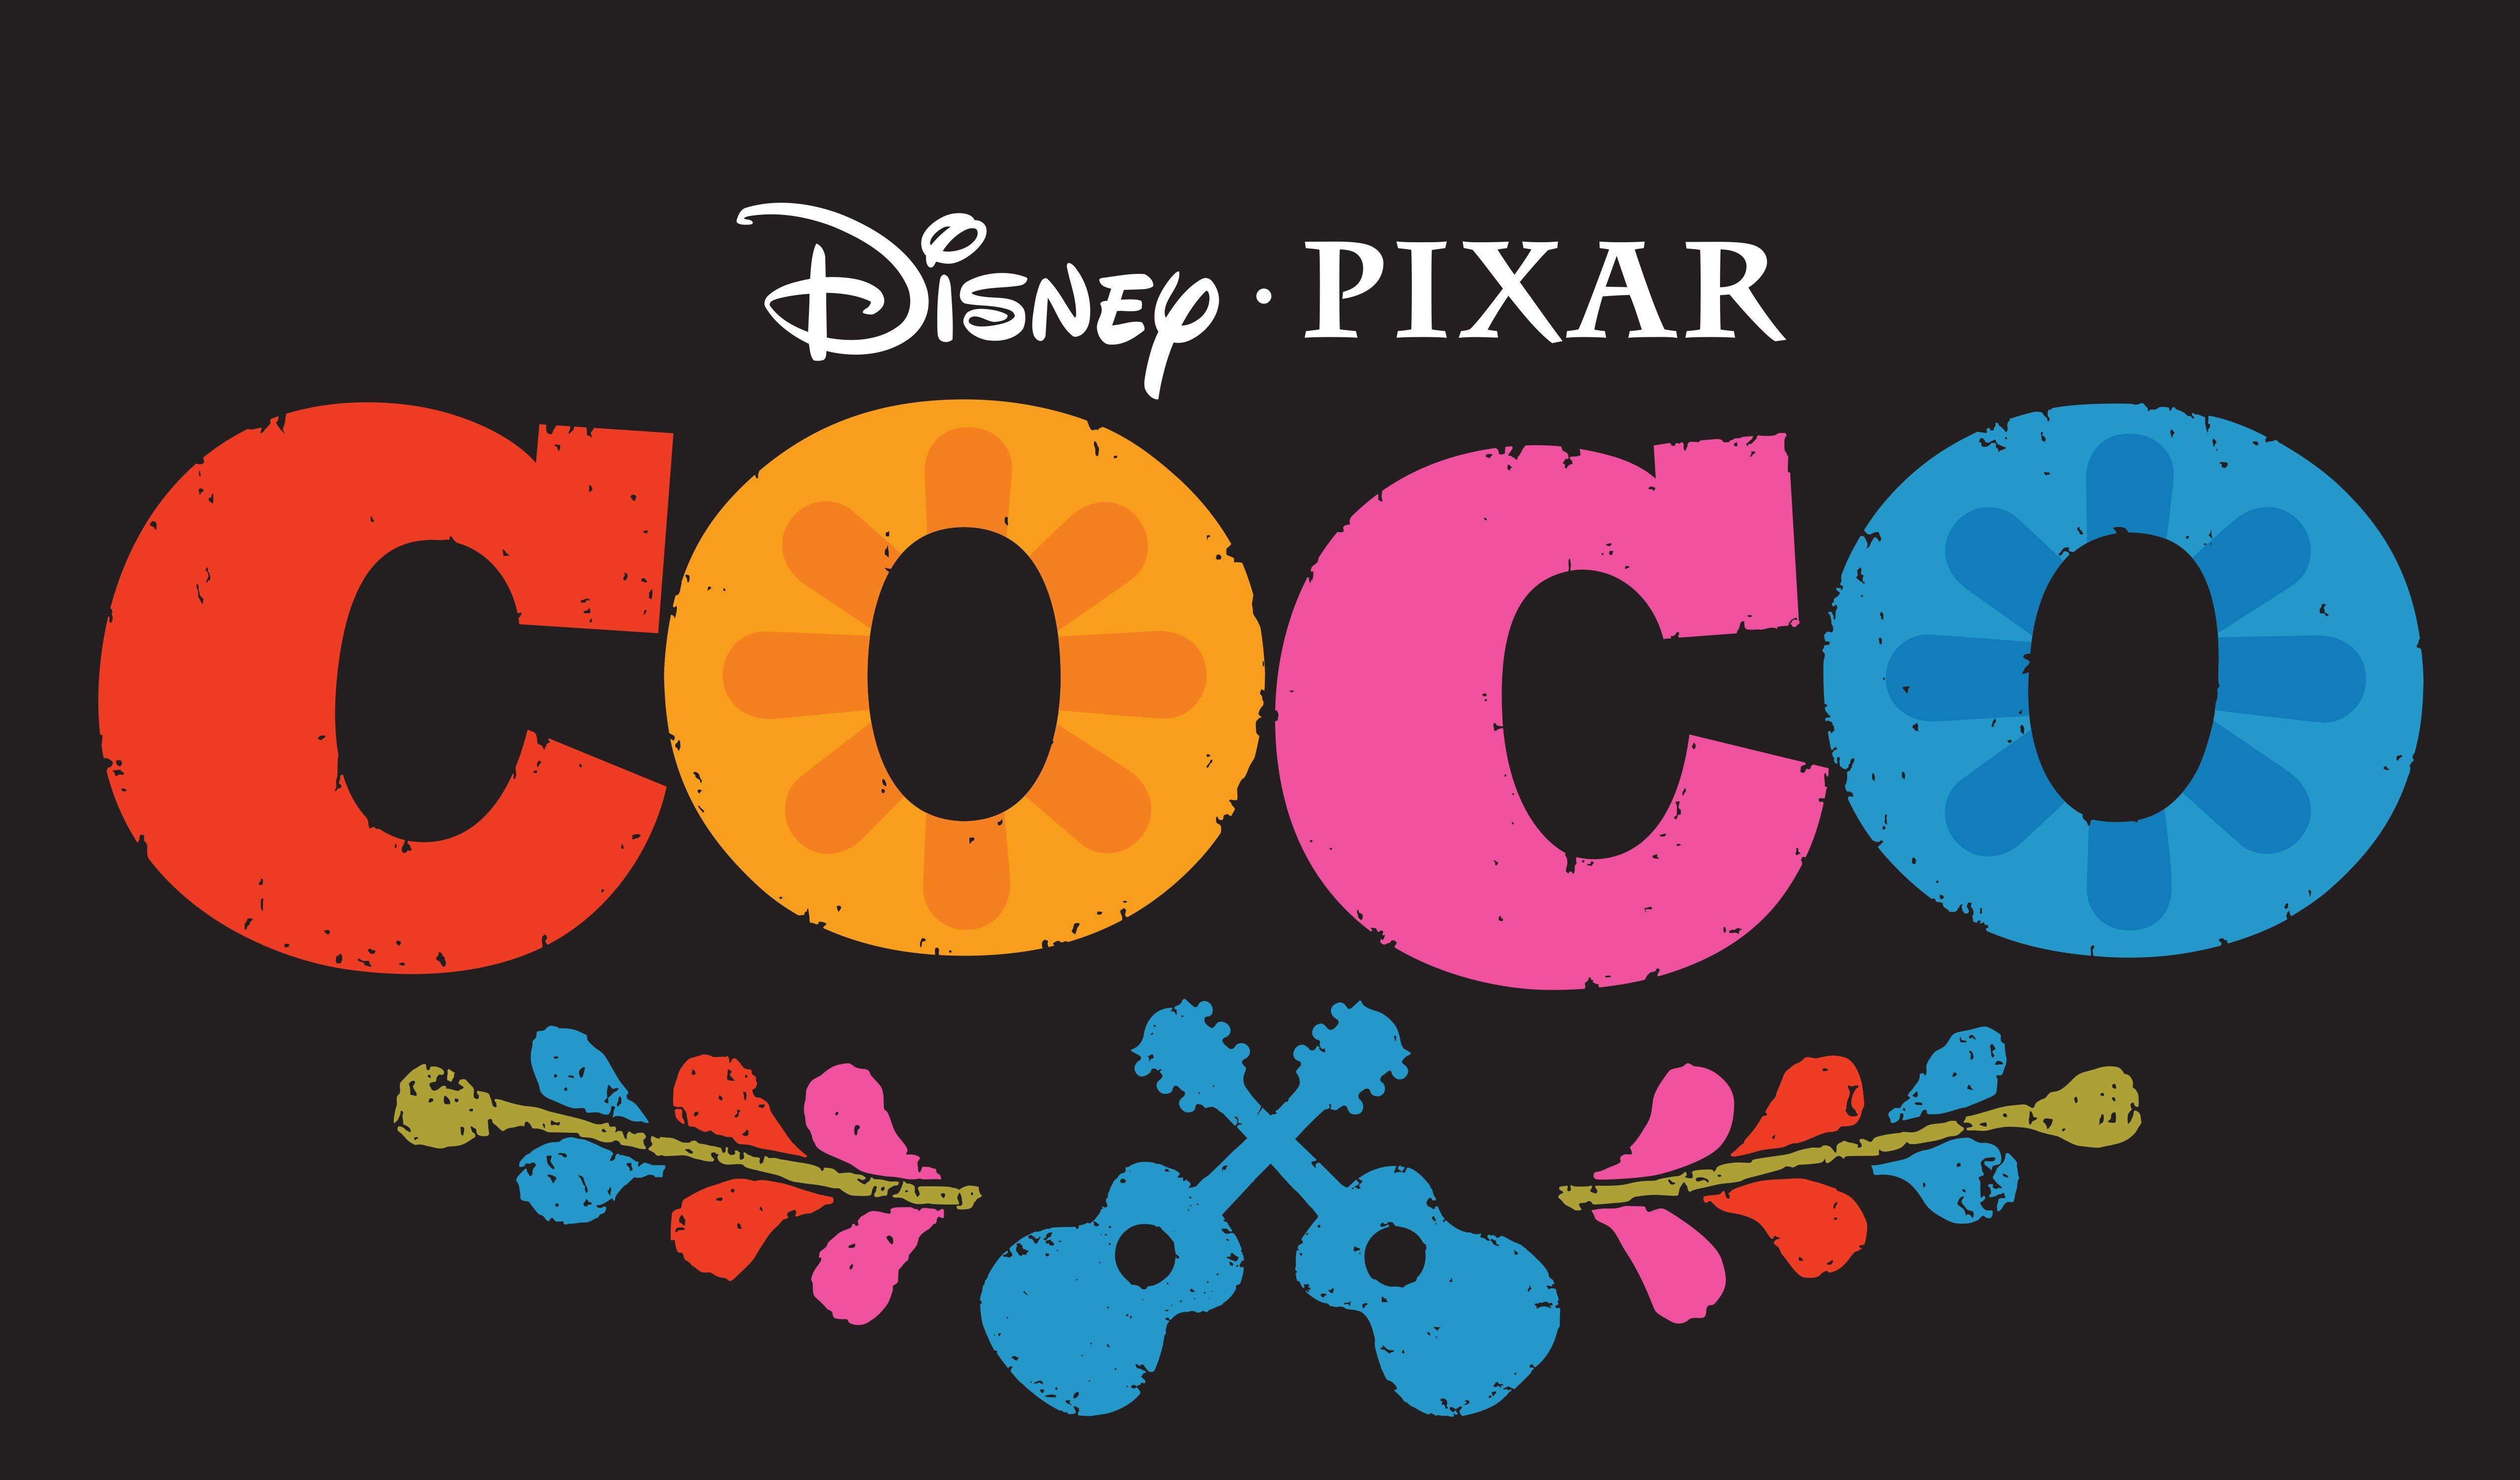 Coco Disney 2017 Movie. Movies HD 4k Wallpaper